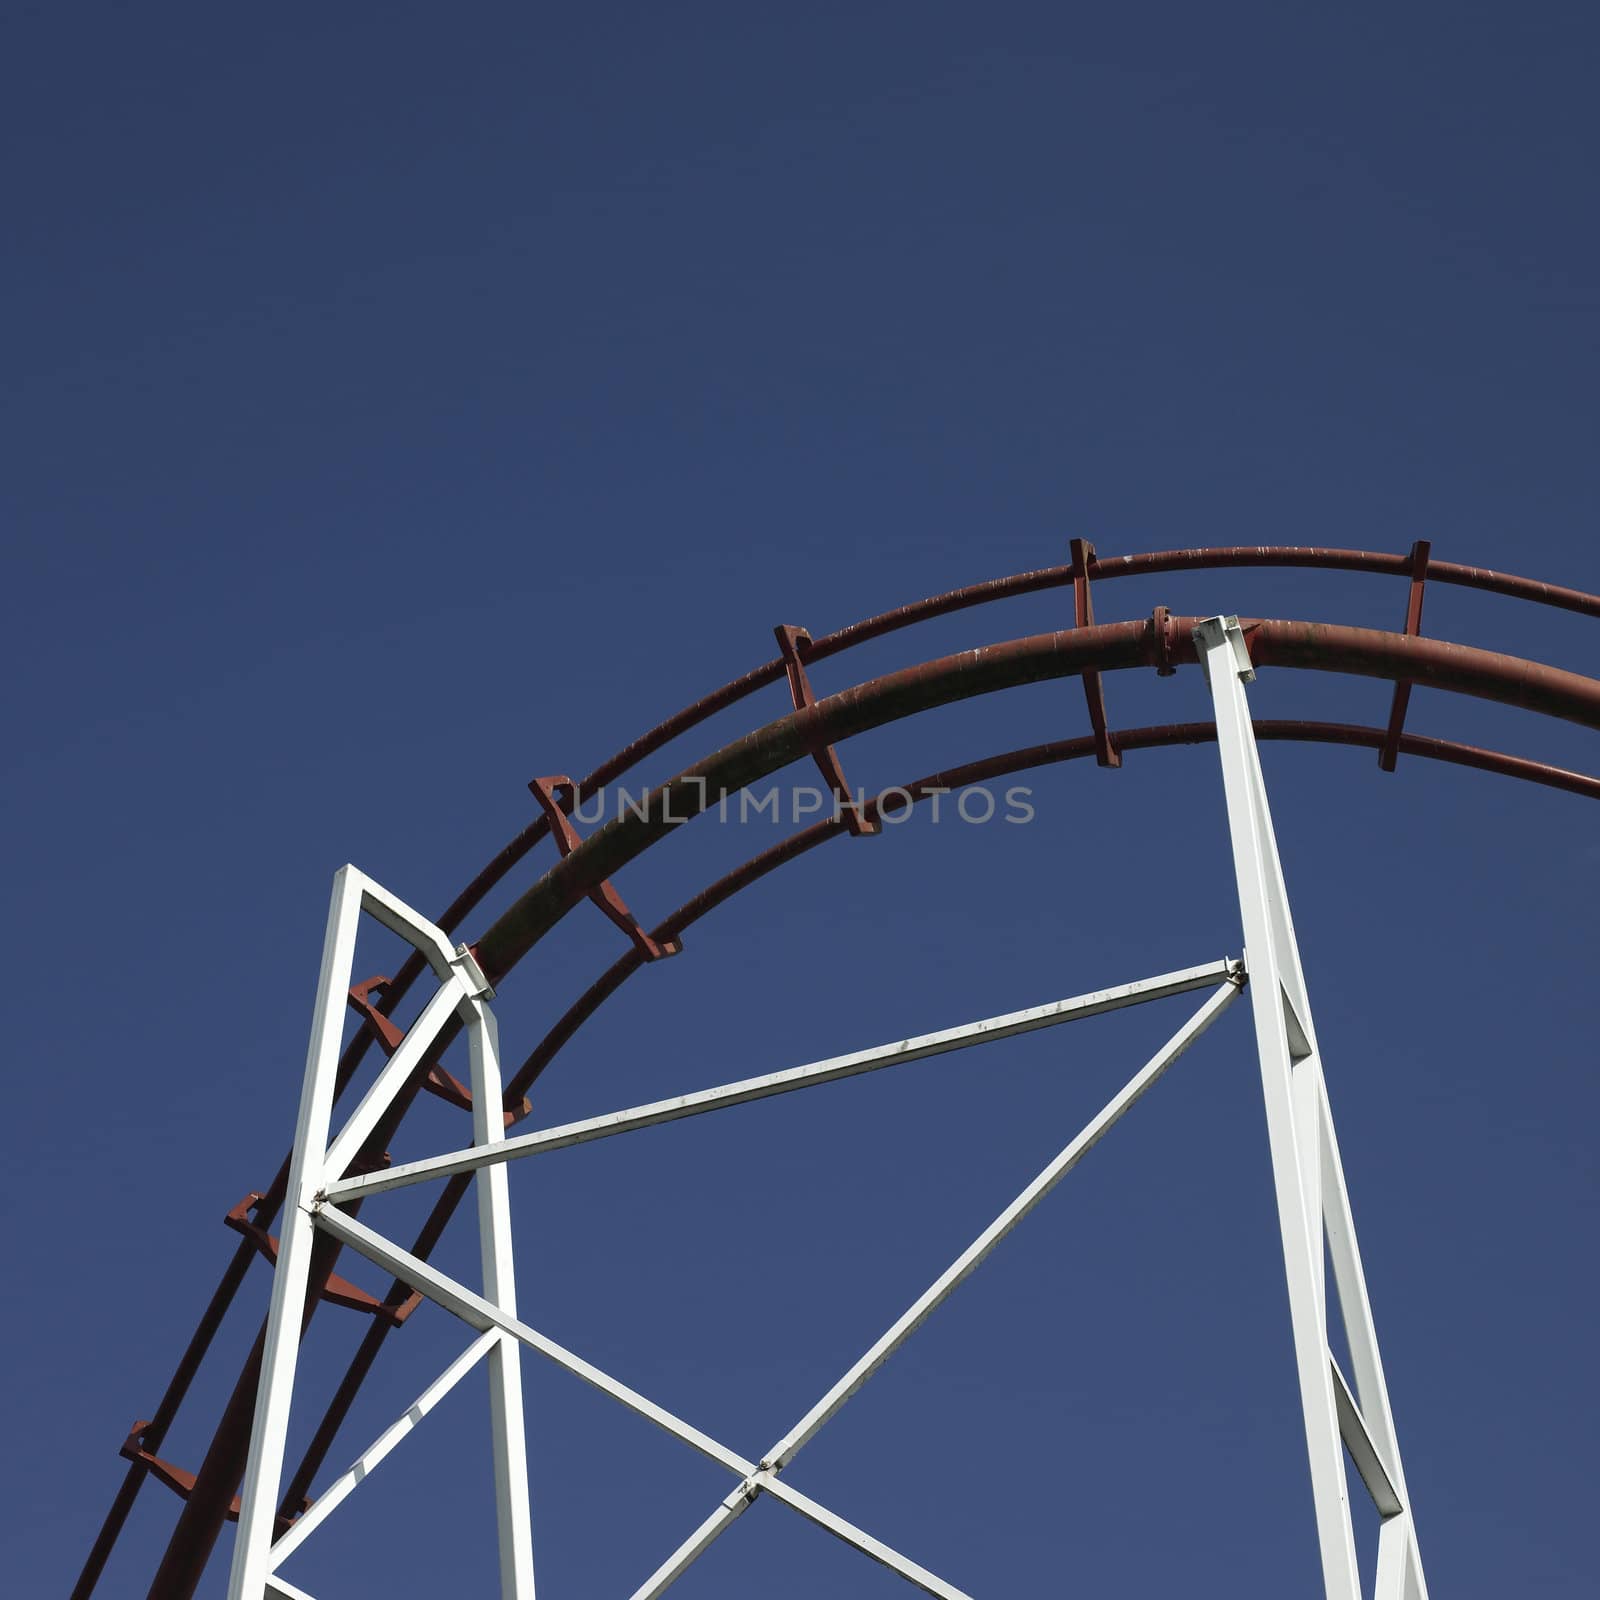 amusement park ride against blue sky